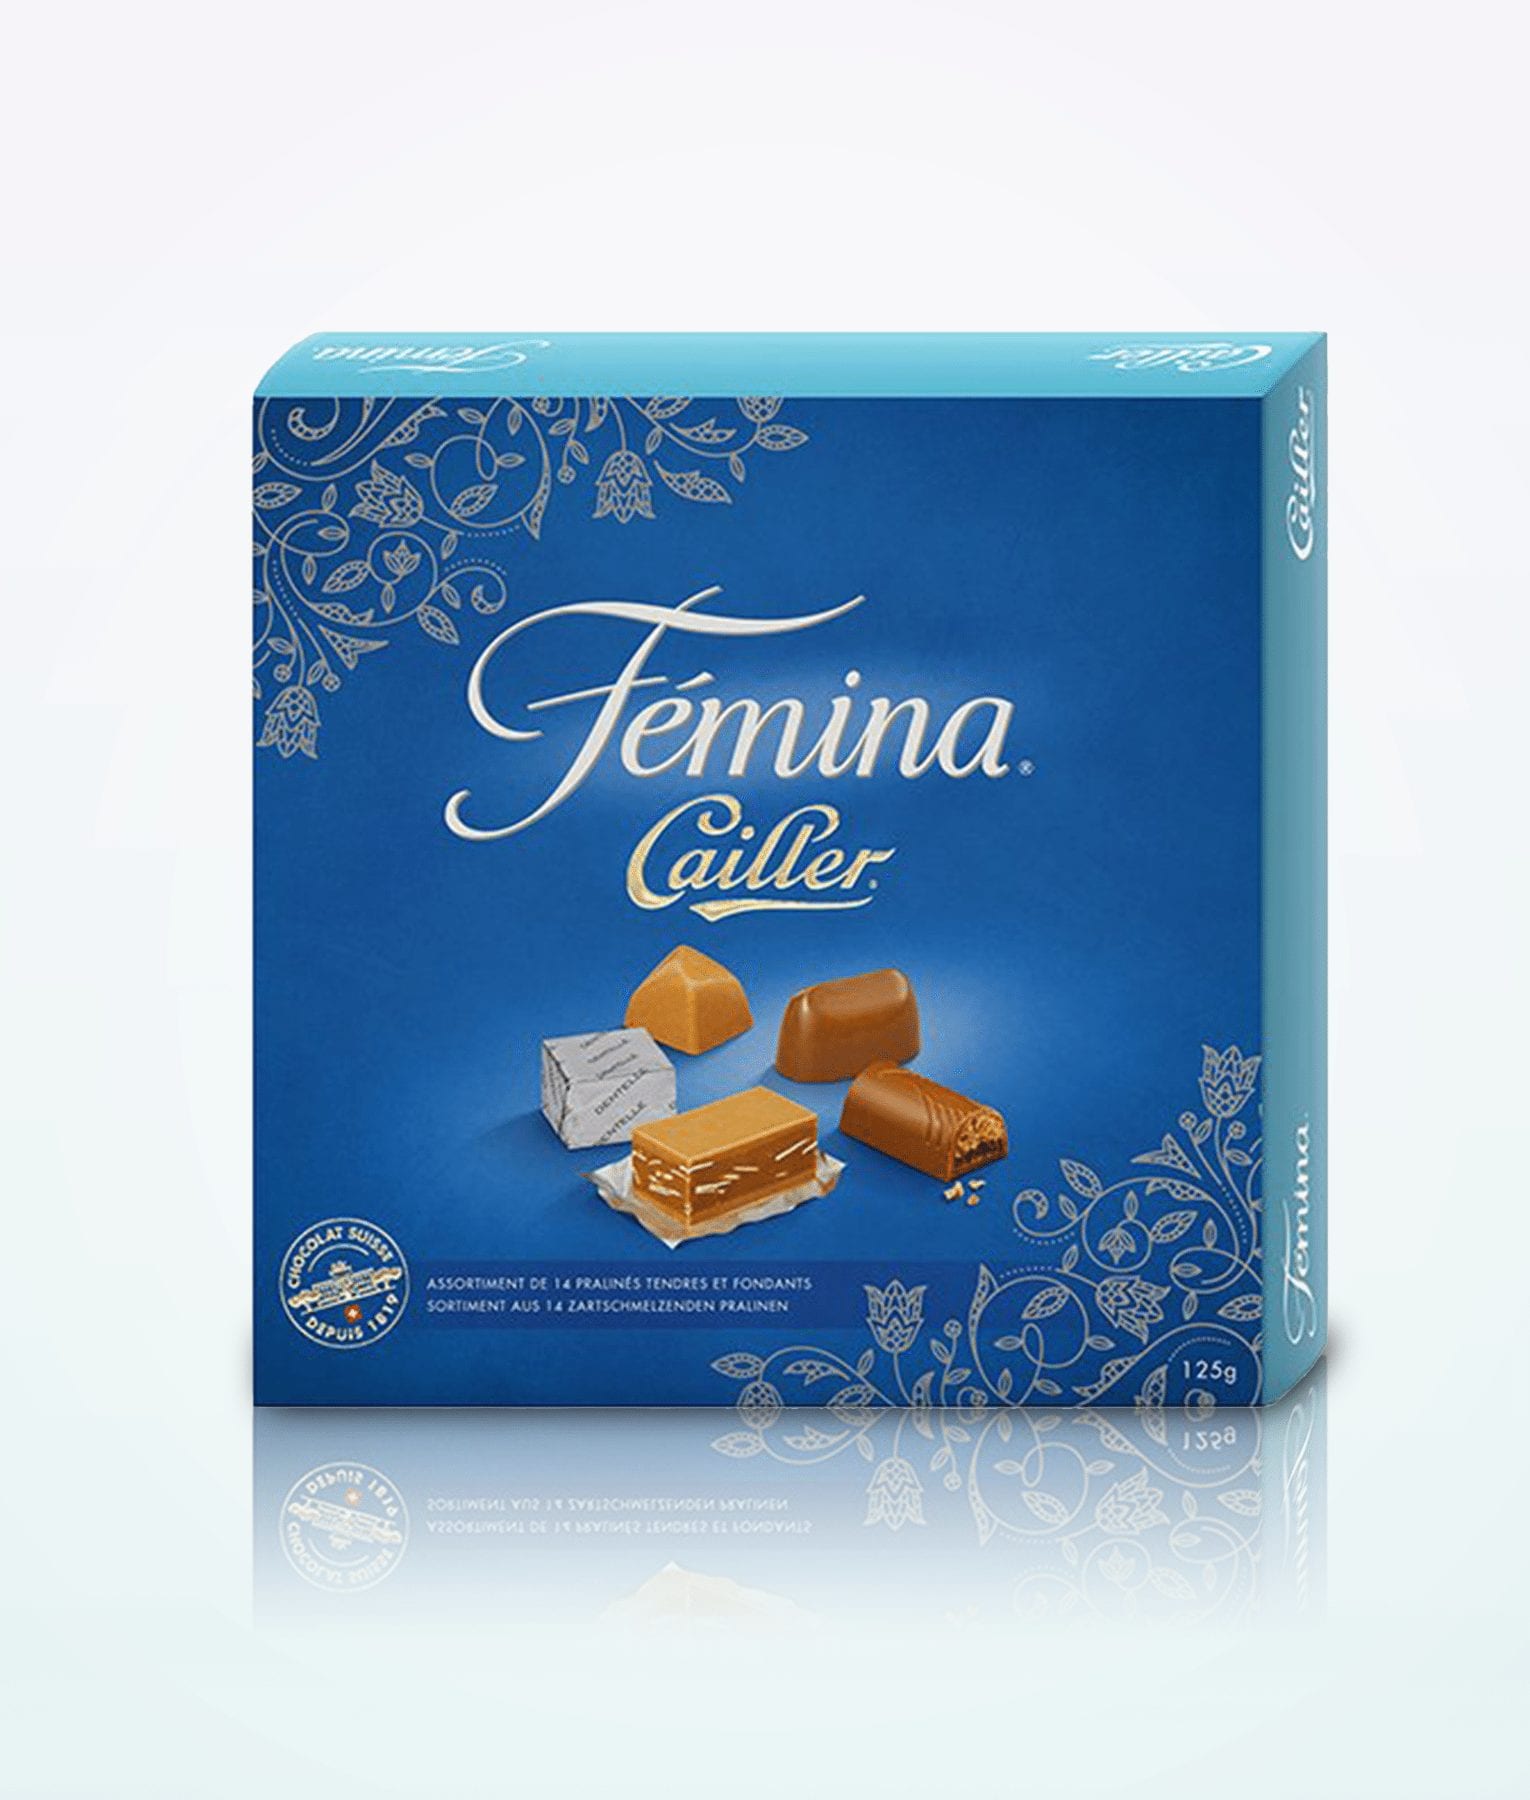 Cailler Femina Praline Box 125 g.jpg